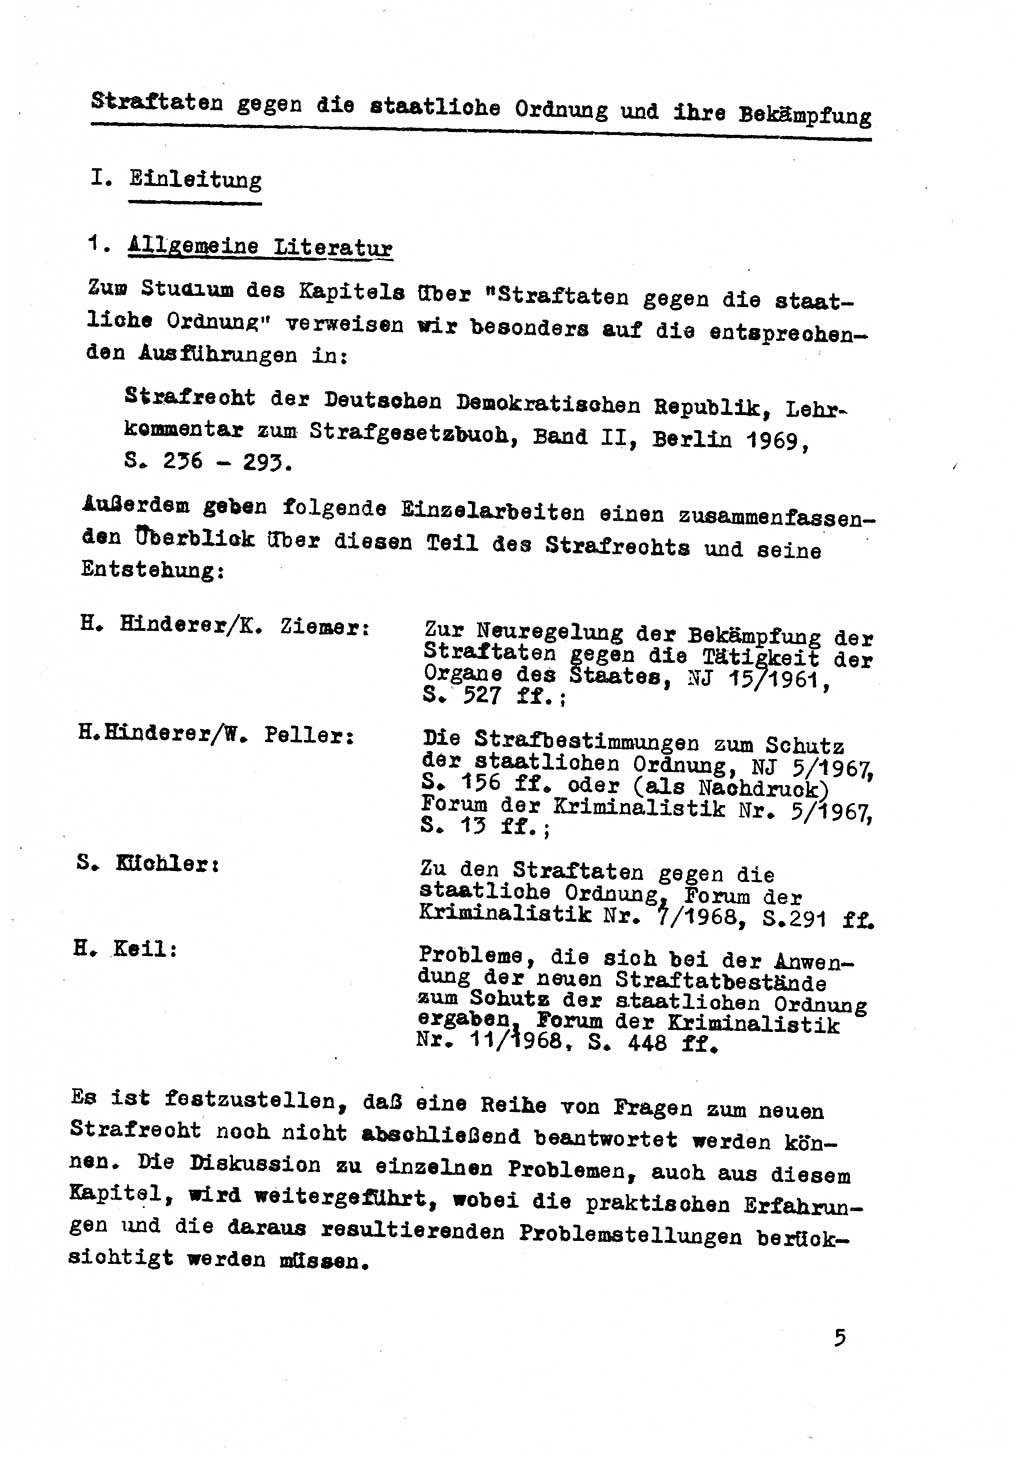 Strafrecht der DDR (Deutsche Demokratische Republik), Besonderer Teil, Lehrmaterial, Heft 8 1970, Seite 5 (Strafr. DDR BT Lehrmat. H. 8 1970, S. 5)